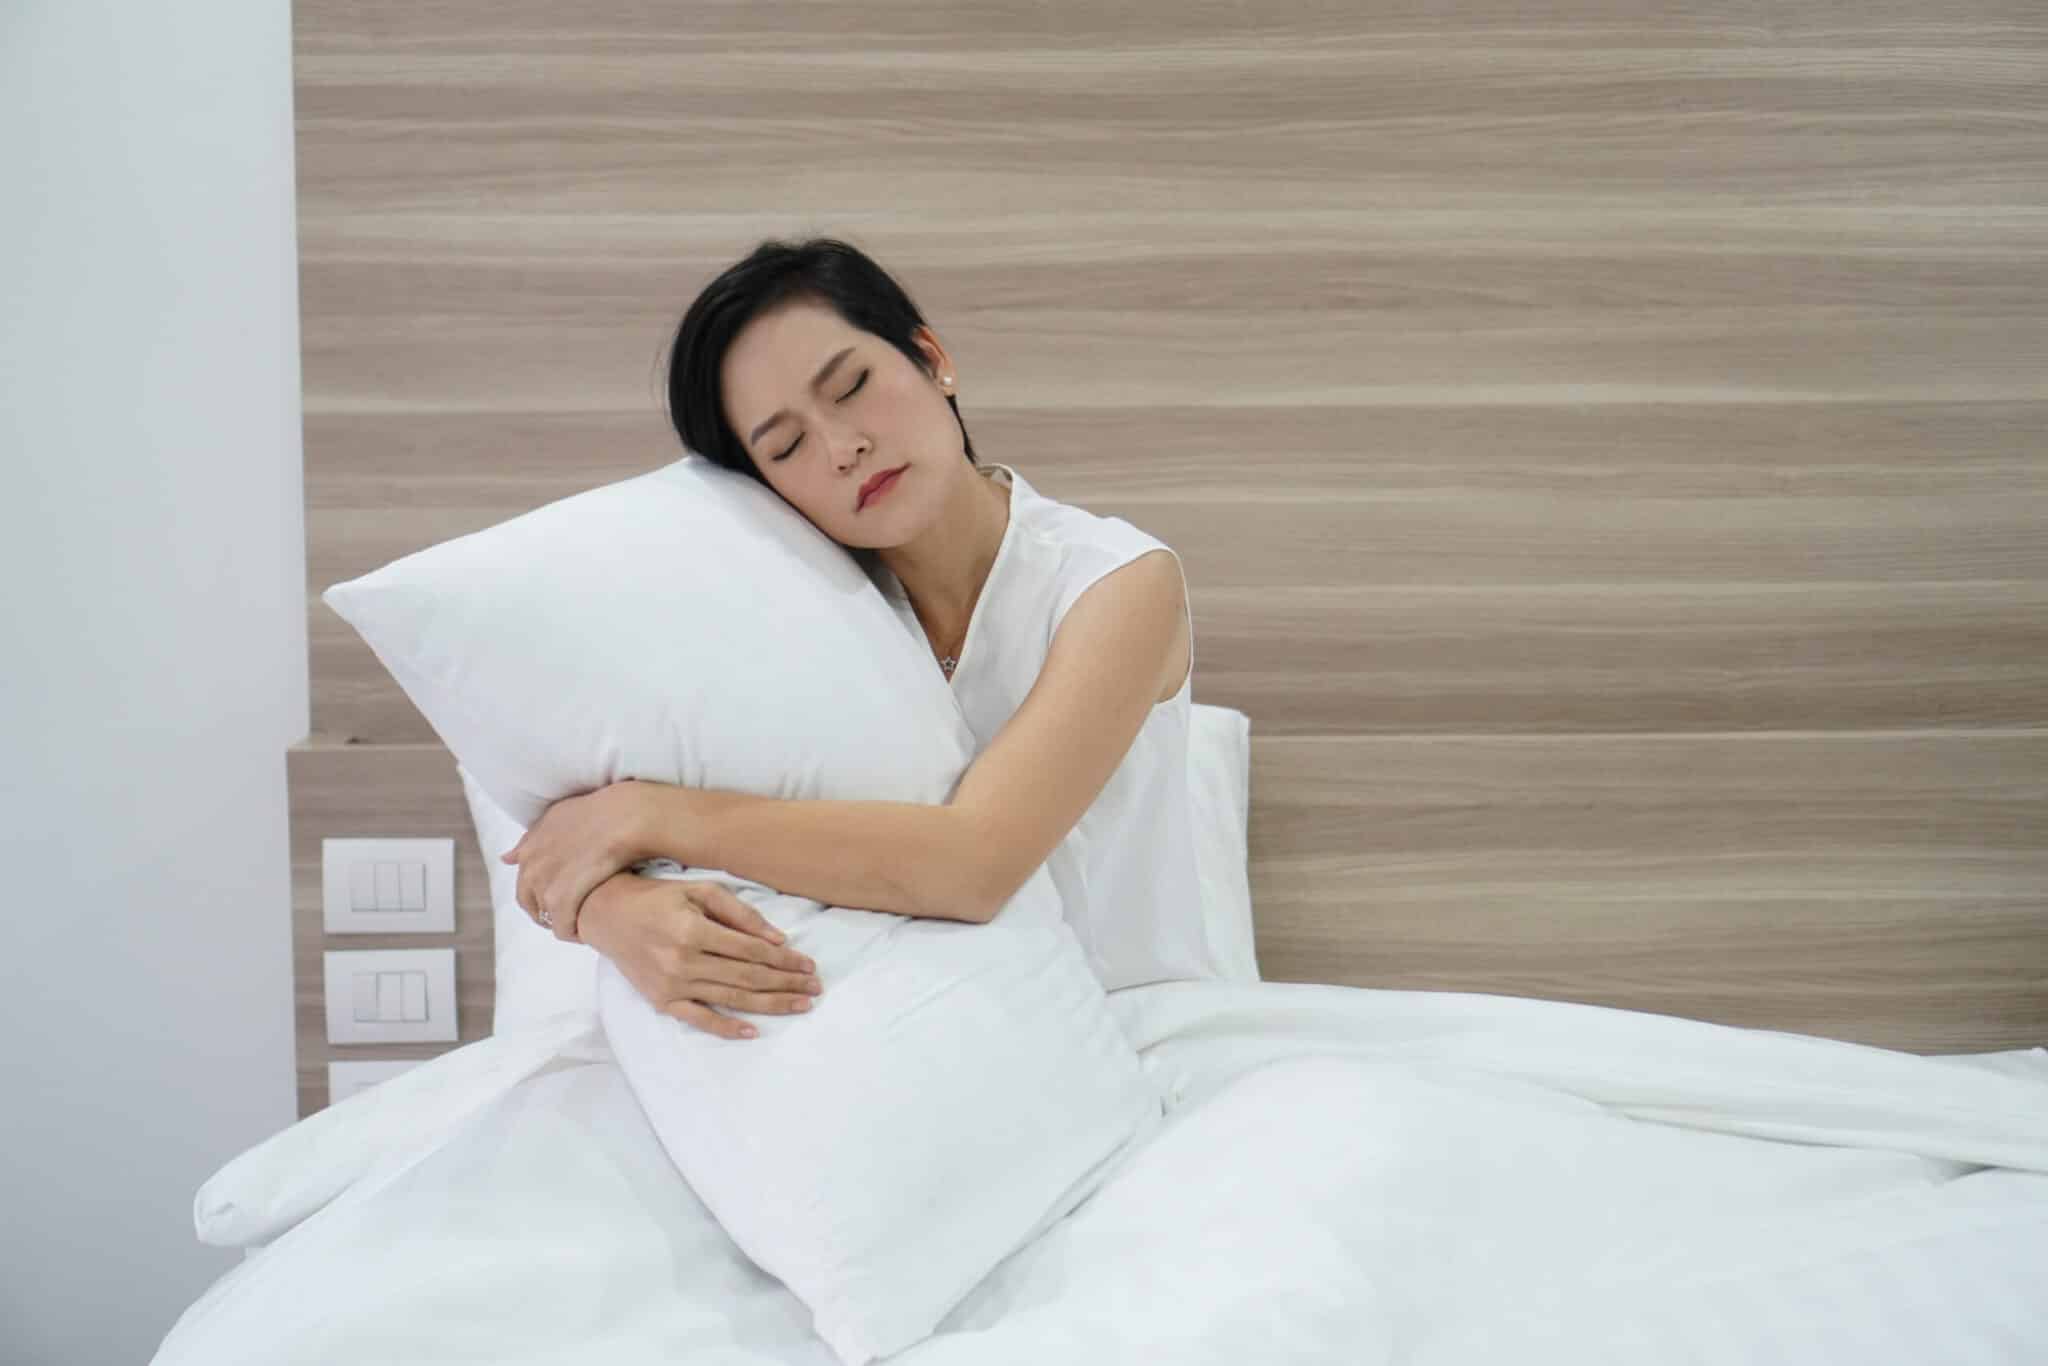 นอนกรน, เลเซอร์แก้นอนกรน, รักษาอาการกรน, เลเซอร์นอนกรน, วิธีแก้การนอนกรนผู้หญิง, แก้อาการนอนกรนผู้หญิง